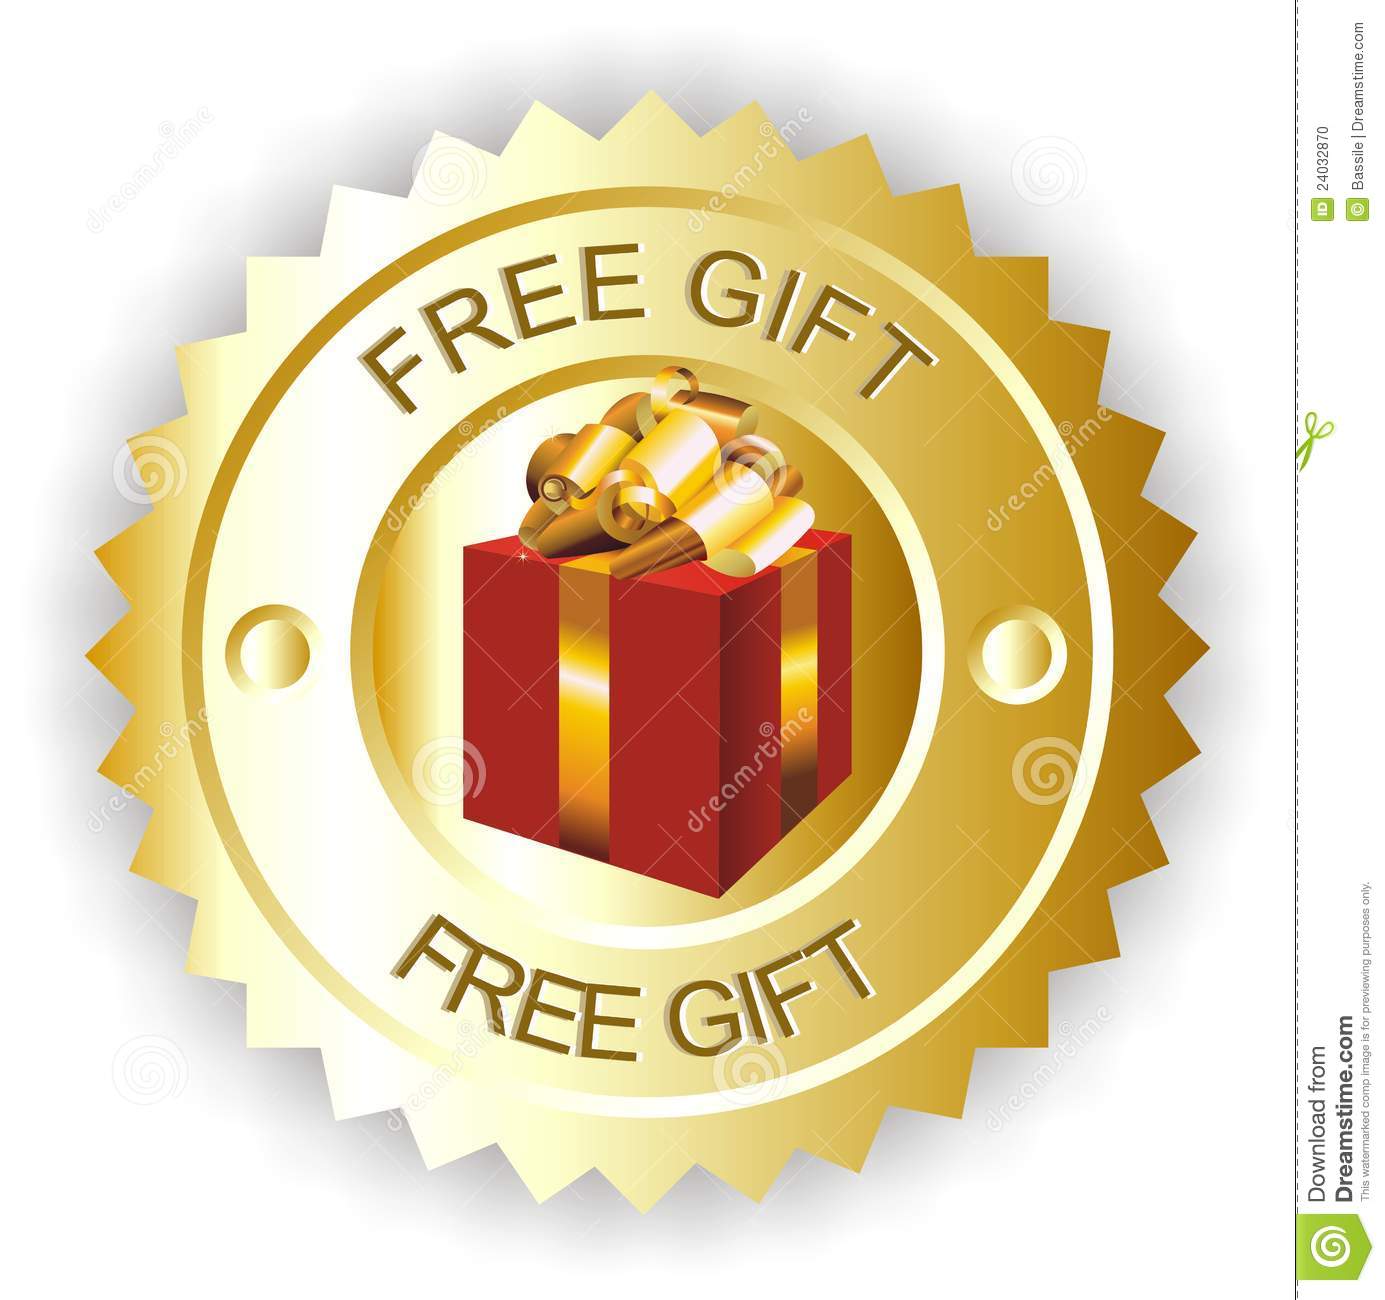 Free Gift Images Download - KibrisPDR